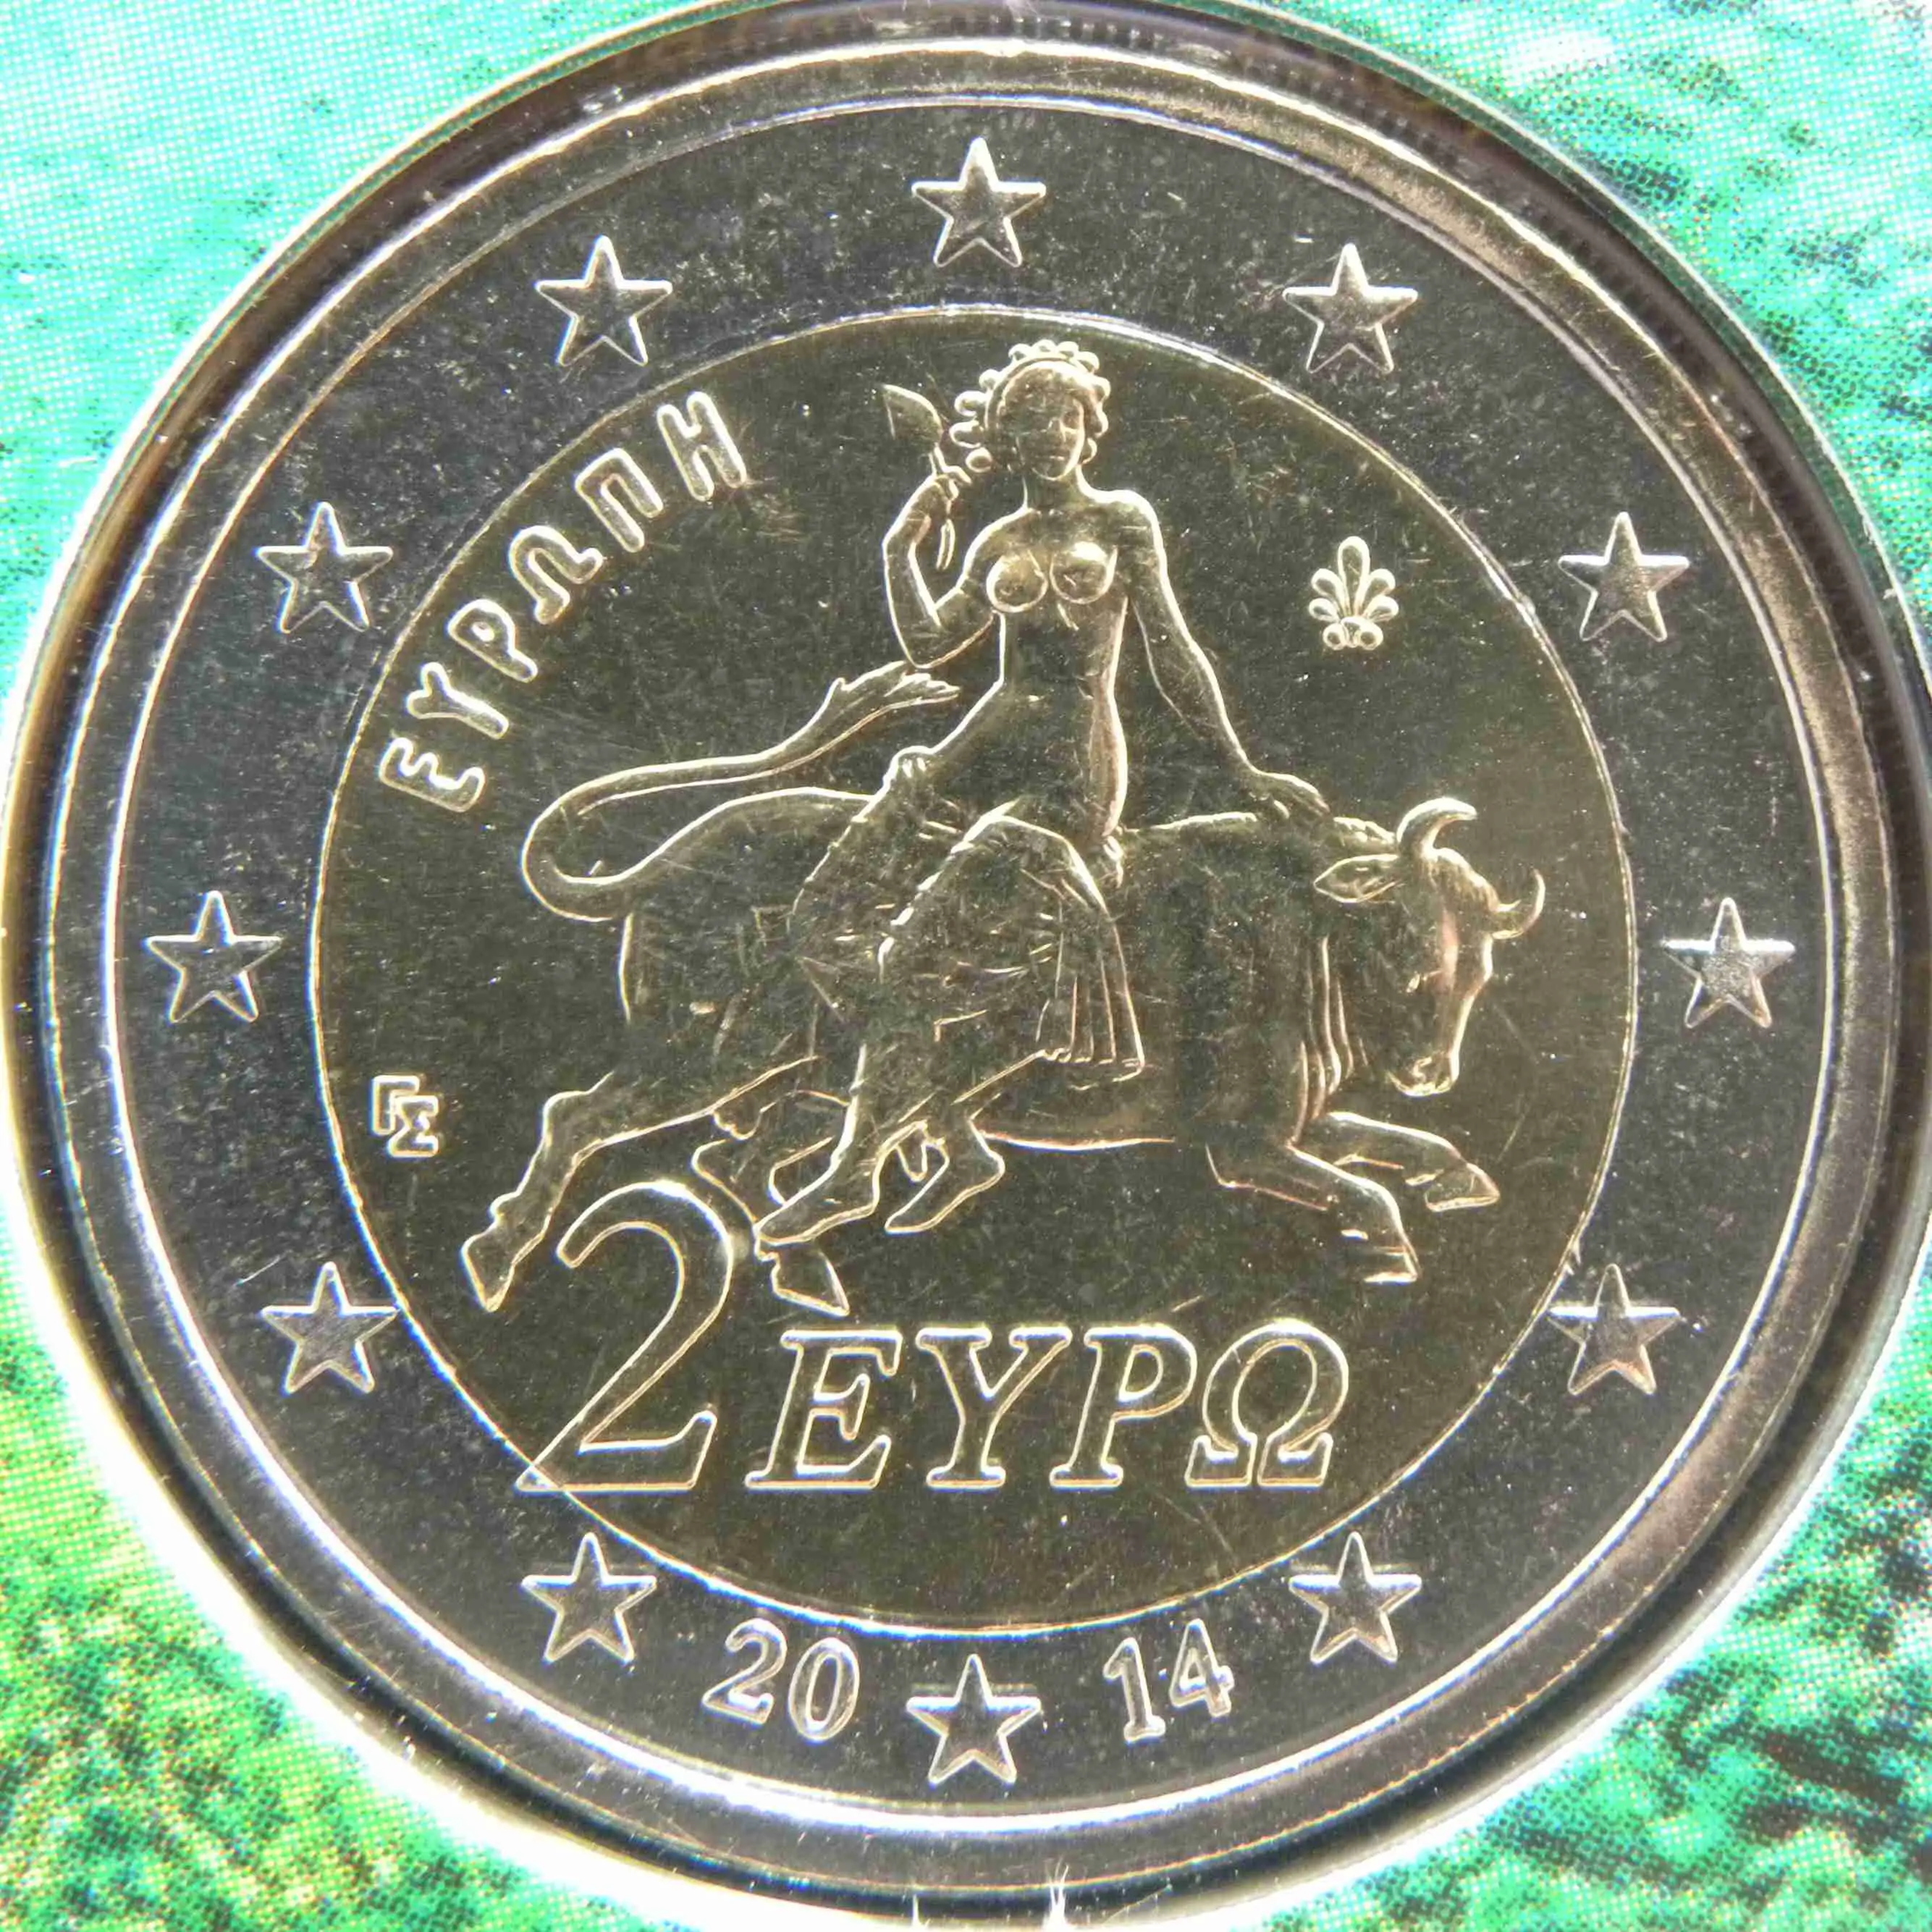 Griechenland Euro Kursmünzen 2014 ᐅ Wert, Infos und Bilder bei euro